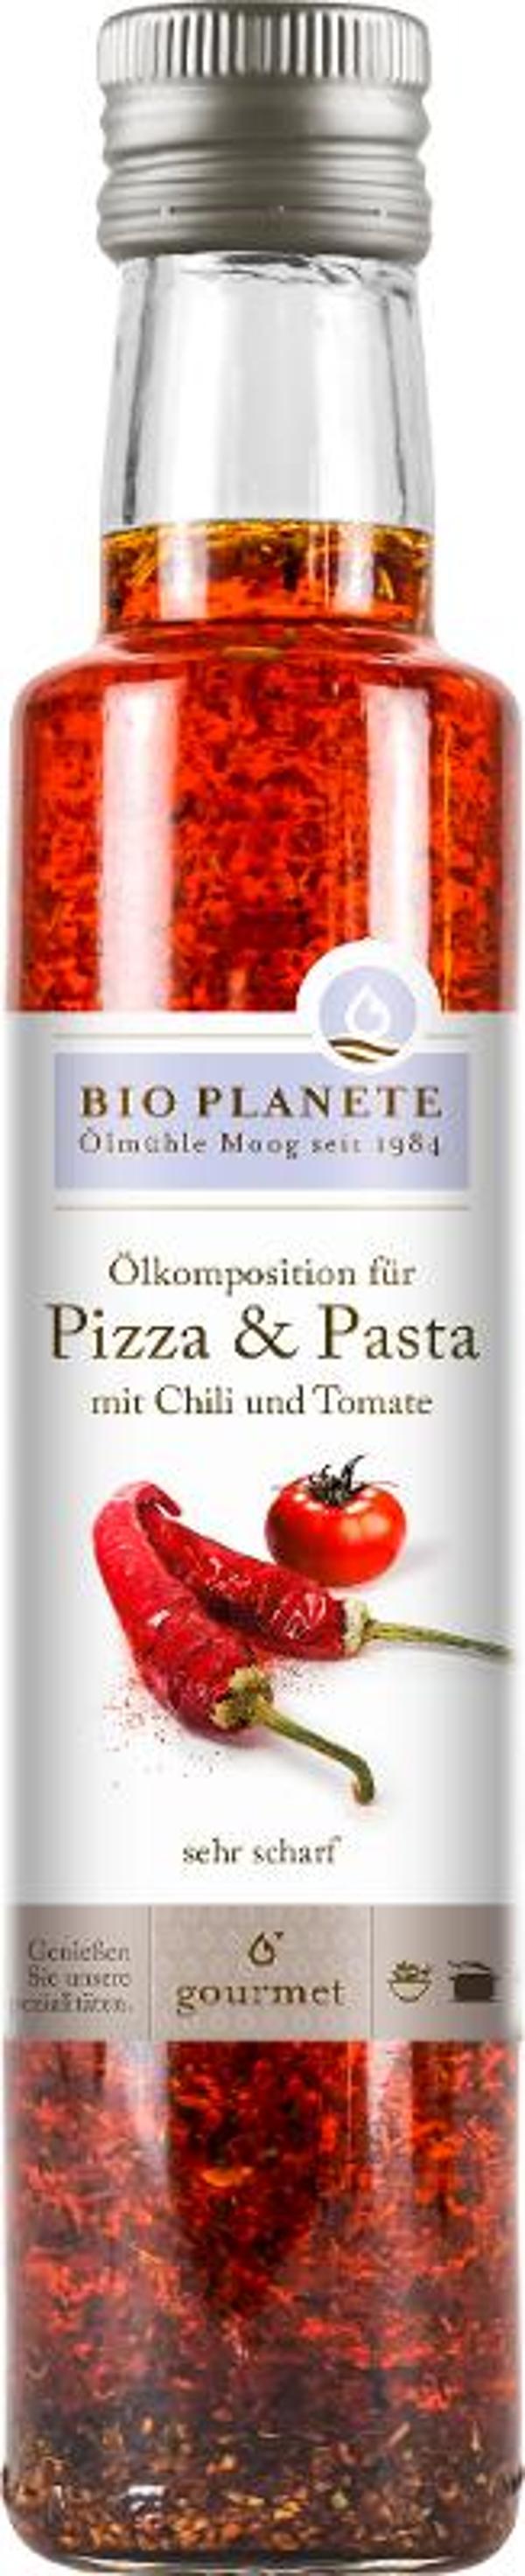 Produktfoto zu Bio Planete Ölkomposition für Pizza & Pasta - 250ml